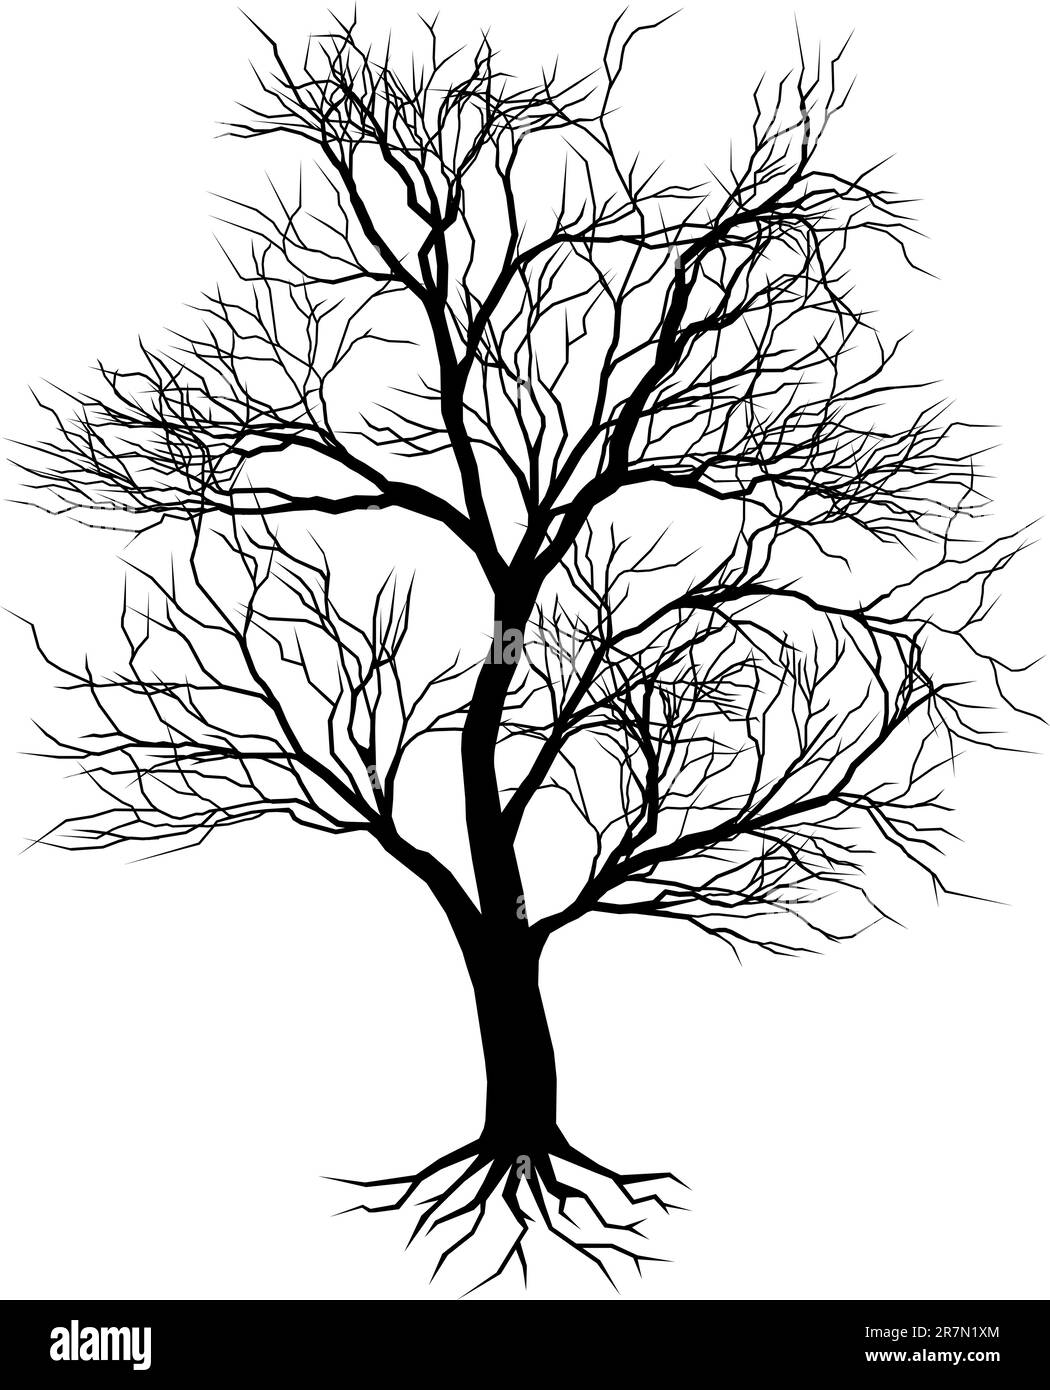 Disegnato a mano vecchio albero silhouette illustrazione Illustrazione Vettoriale